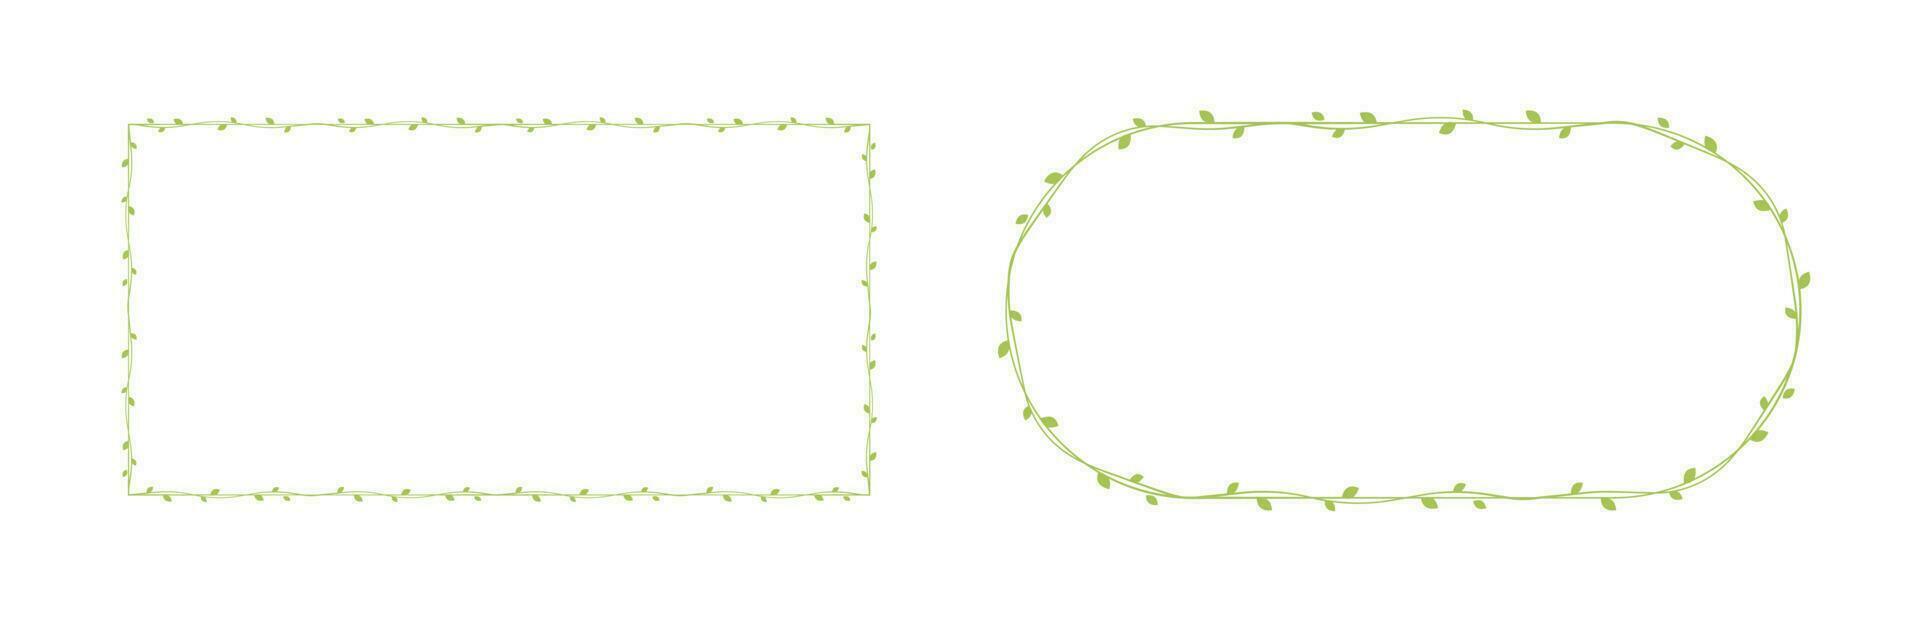 groen Liaan kaders en borders set, bloemen botanisch ontwerp element vector illustratie